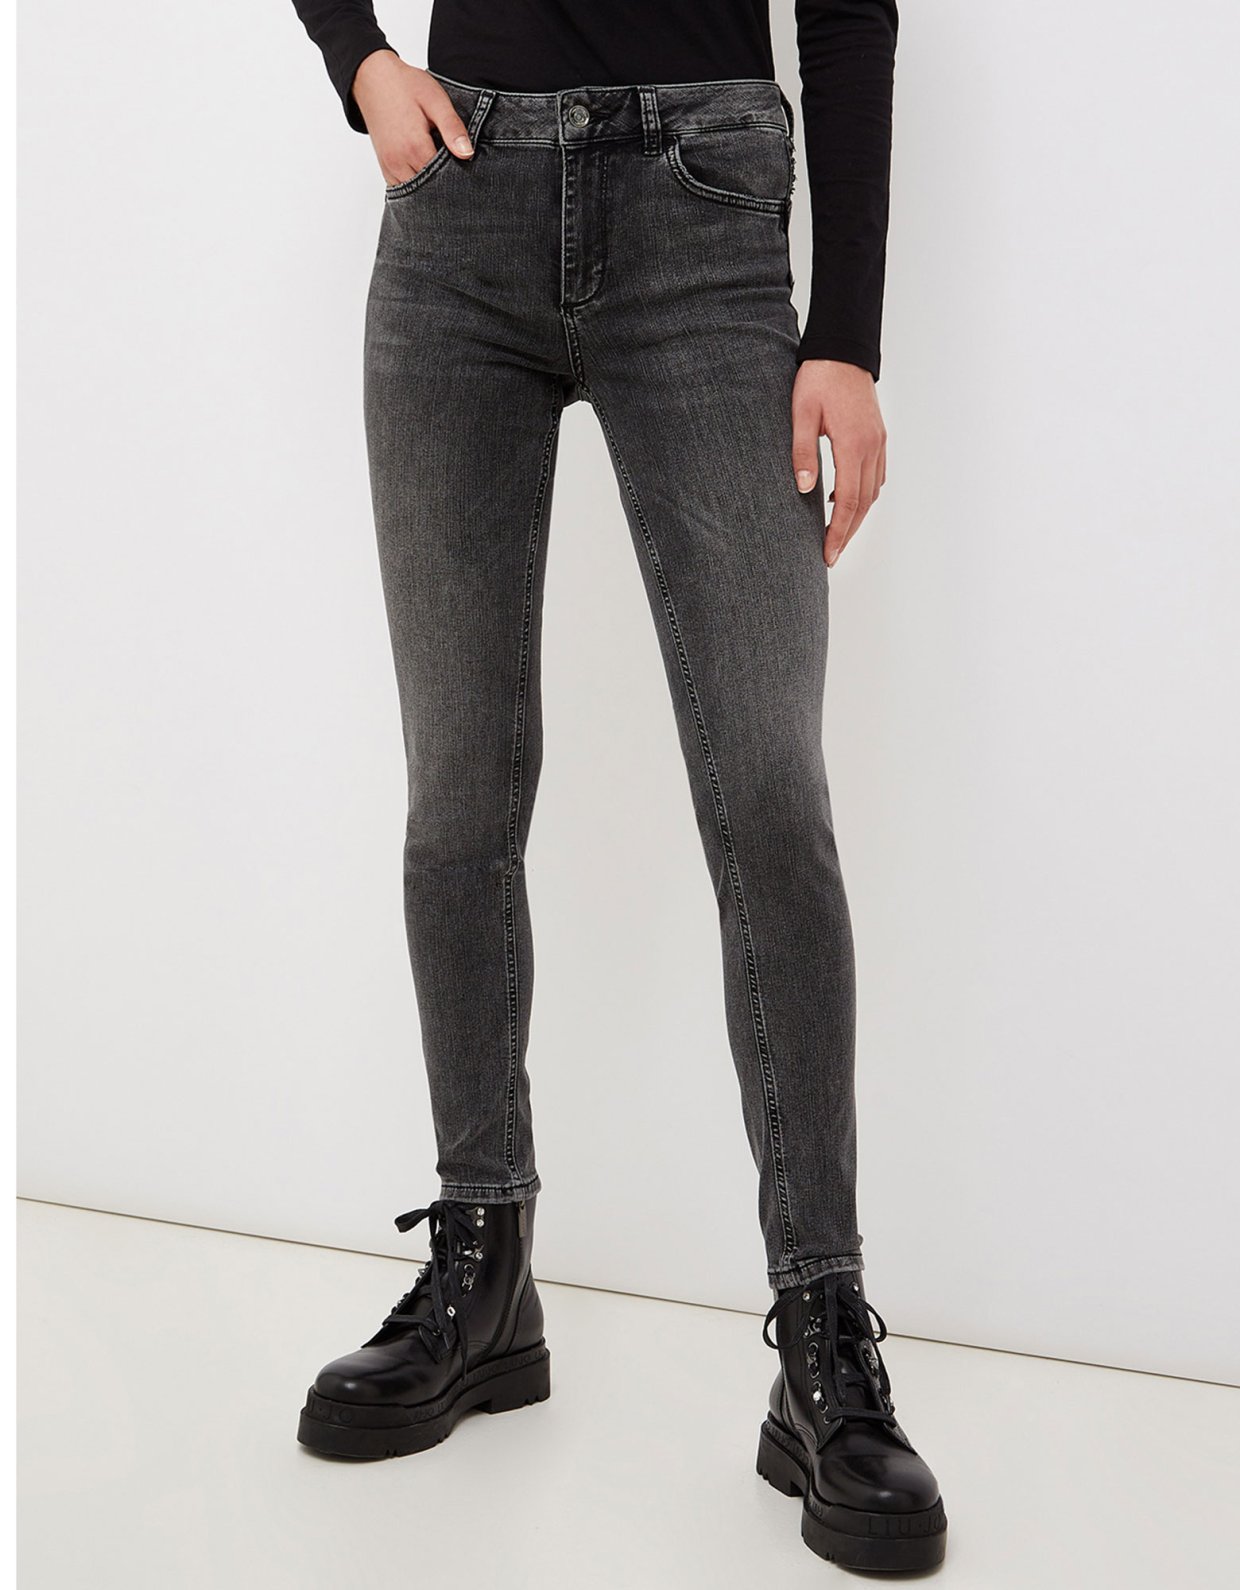 Liu Jo Skinny jeans with jewel appliqués grey